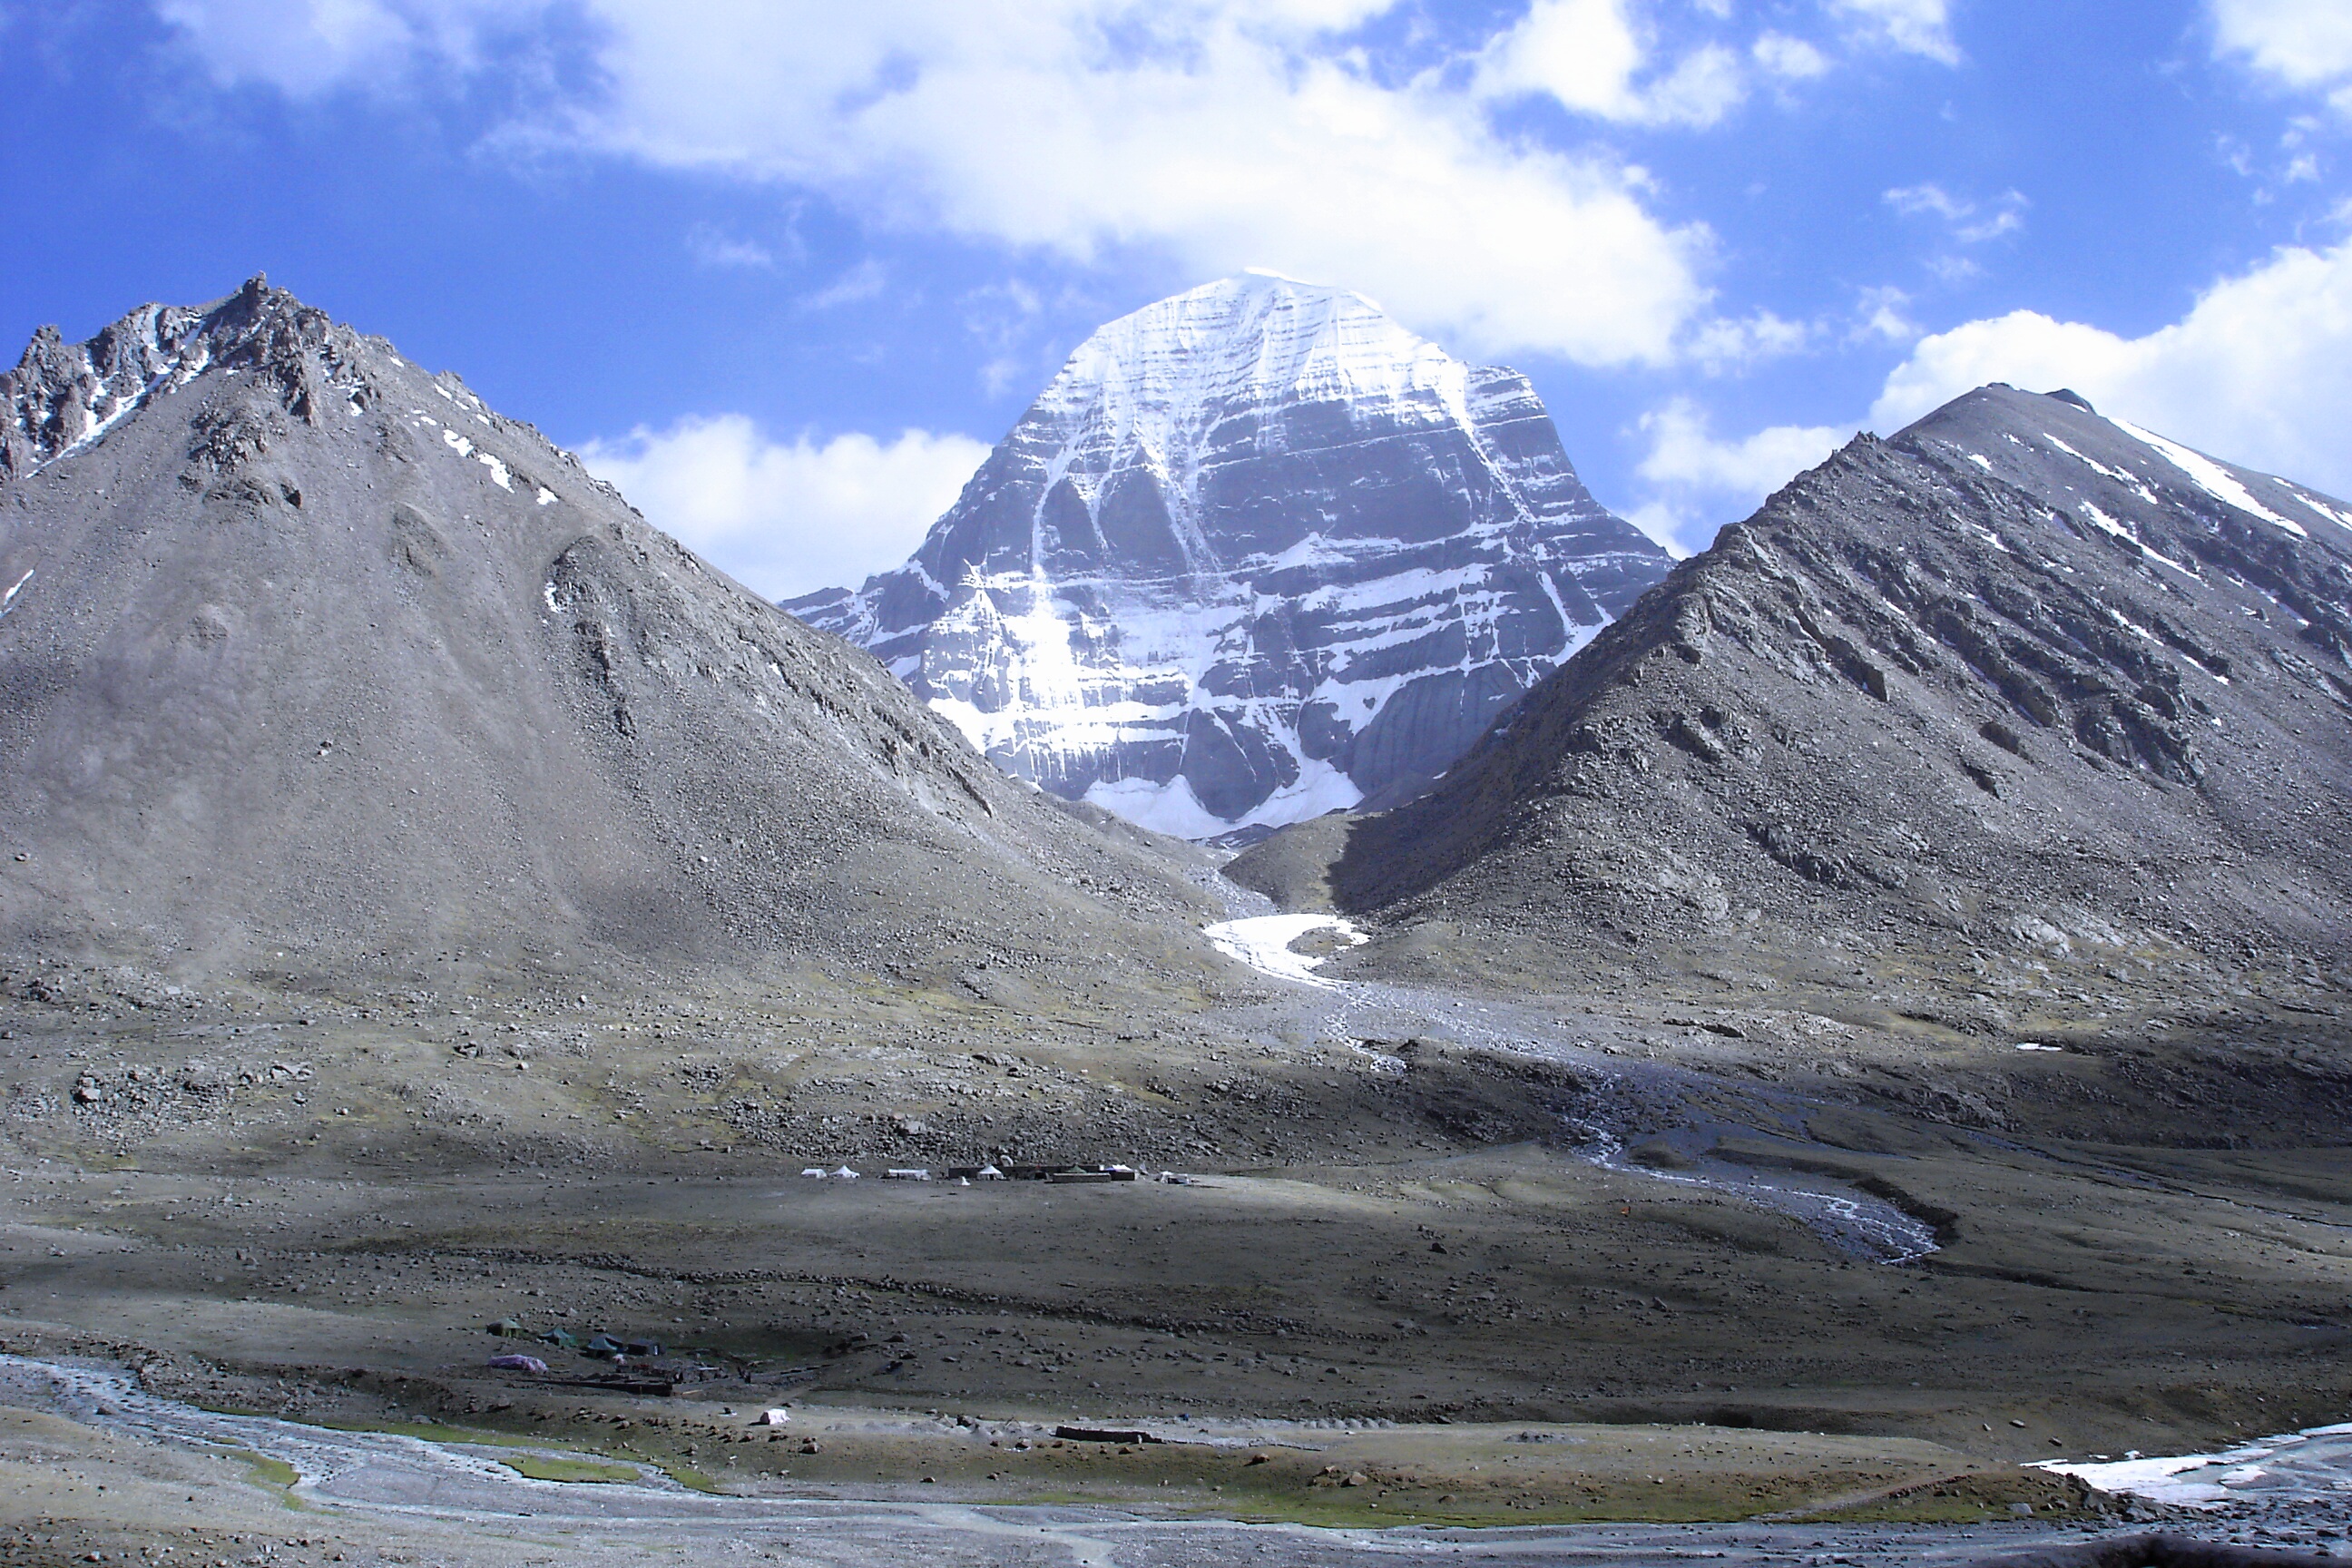 Relatos envolvendo monte Kailash vão desde desaparecimento de grupo a barulhos sobrenaturais vindos de seu interior